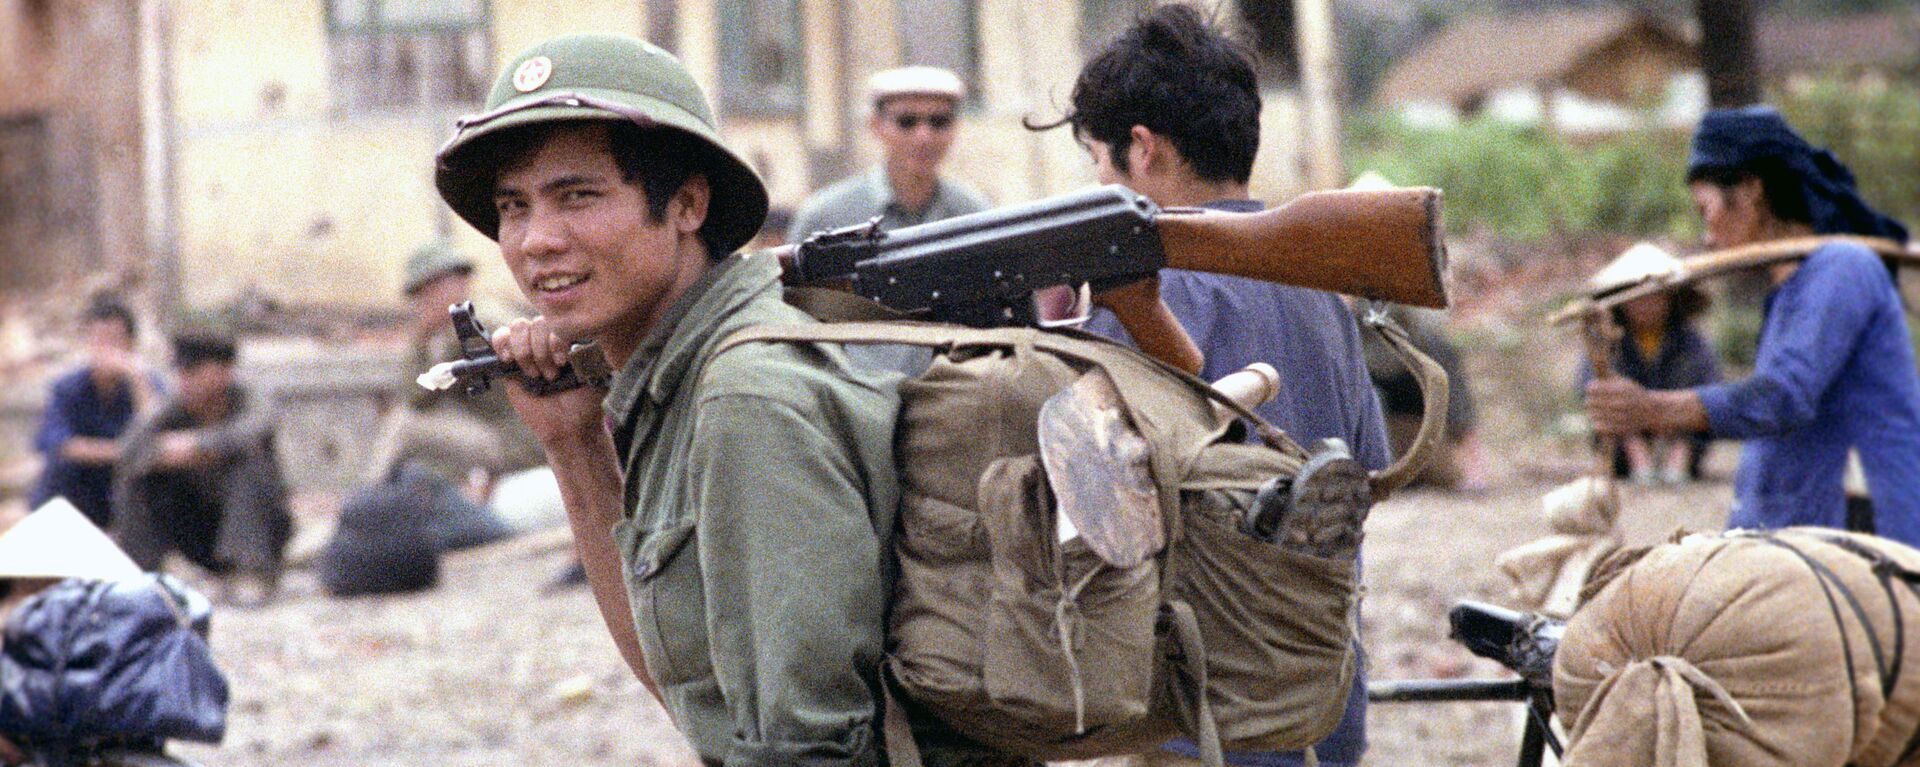 Cuộc xung đột Trung-Việt năm 1979 - Sputnik Việt Nam, 1920, 13.02.2019